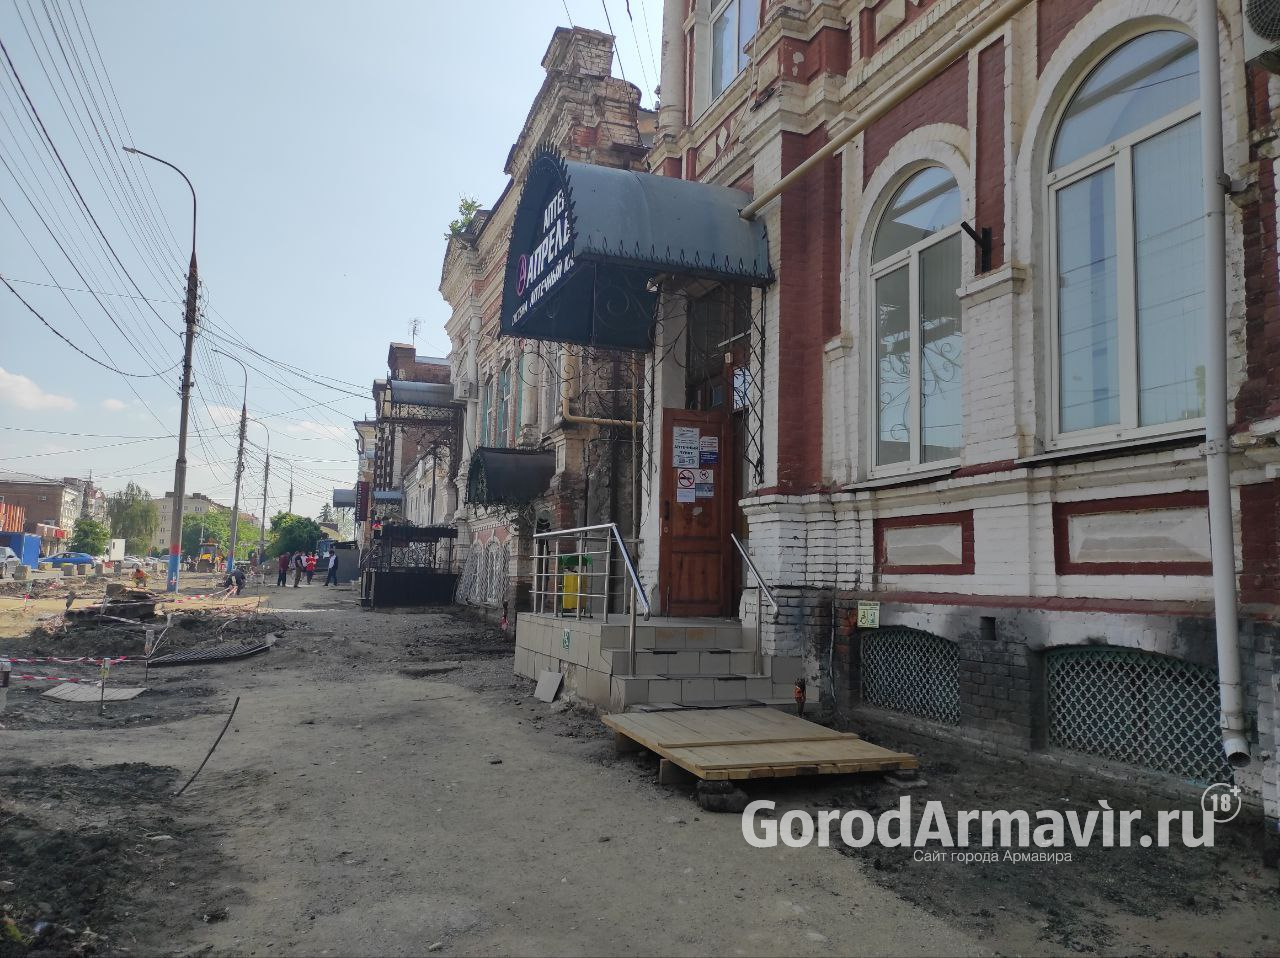 В Армавире с 26 мая по 1 июля будет закрыто движение по улице Кирова